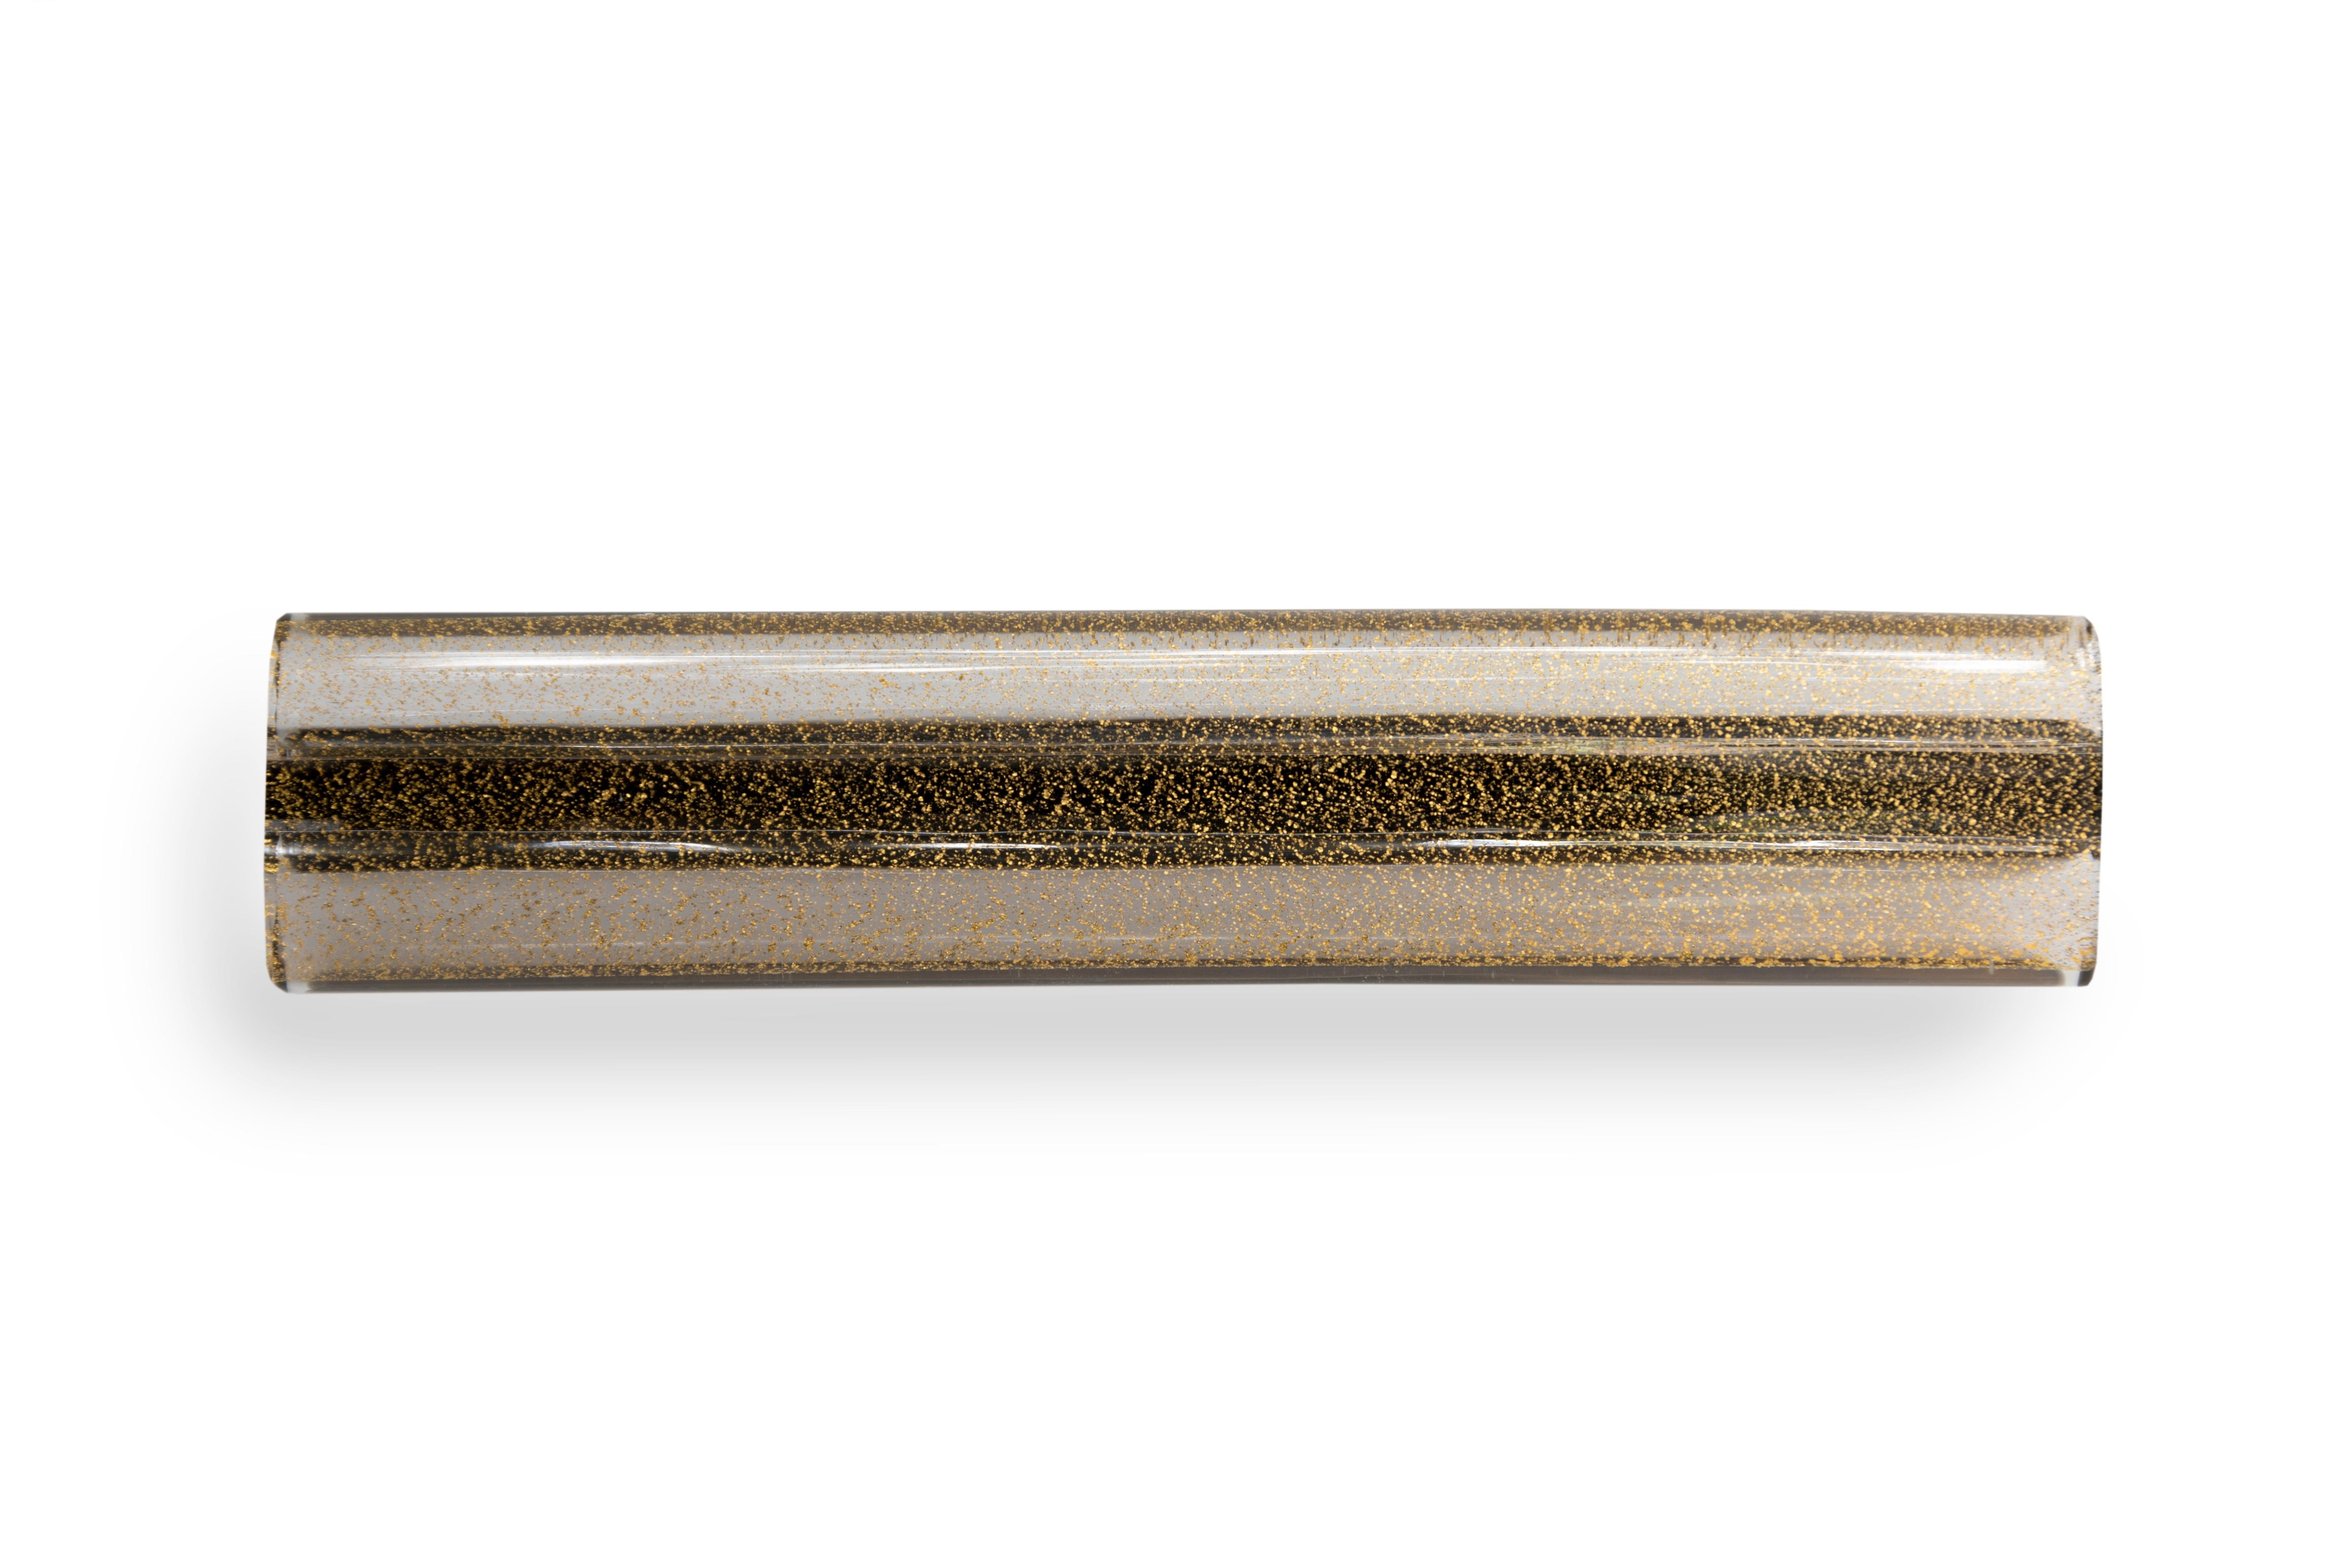 Der Saturn Pull ist ein schlanker Glaszug mit einer geschichteten Sommerso-Technik.
Der Griff eignet sich für eine Vielzahl von Anwendungen im Innenbereich, wie z. B. Schränke, spezielle Tischlerarbeiten, Schränke und Möbel.

Erhältlich in Grau